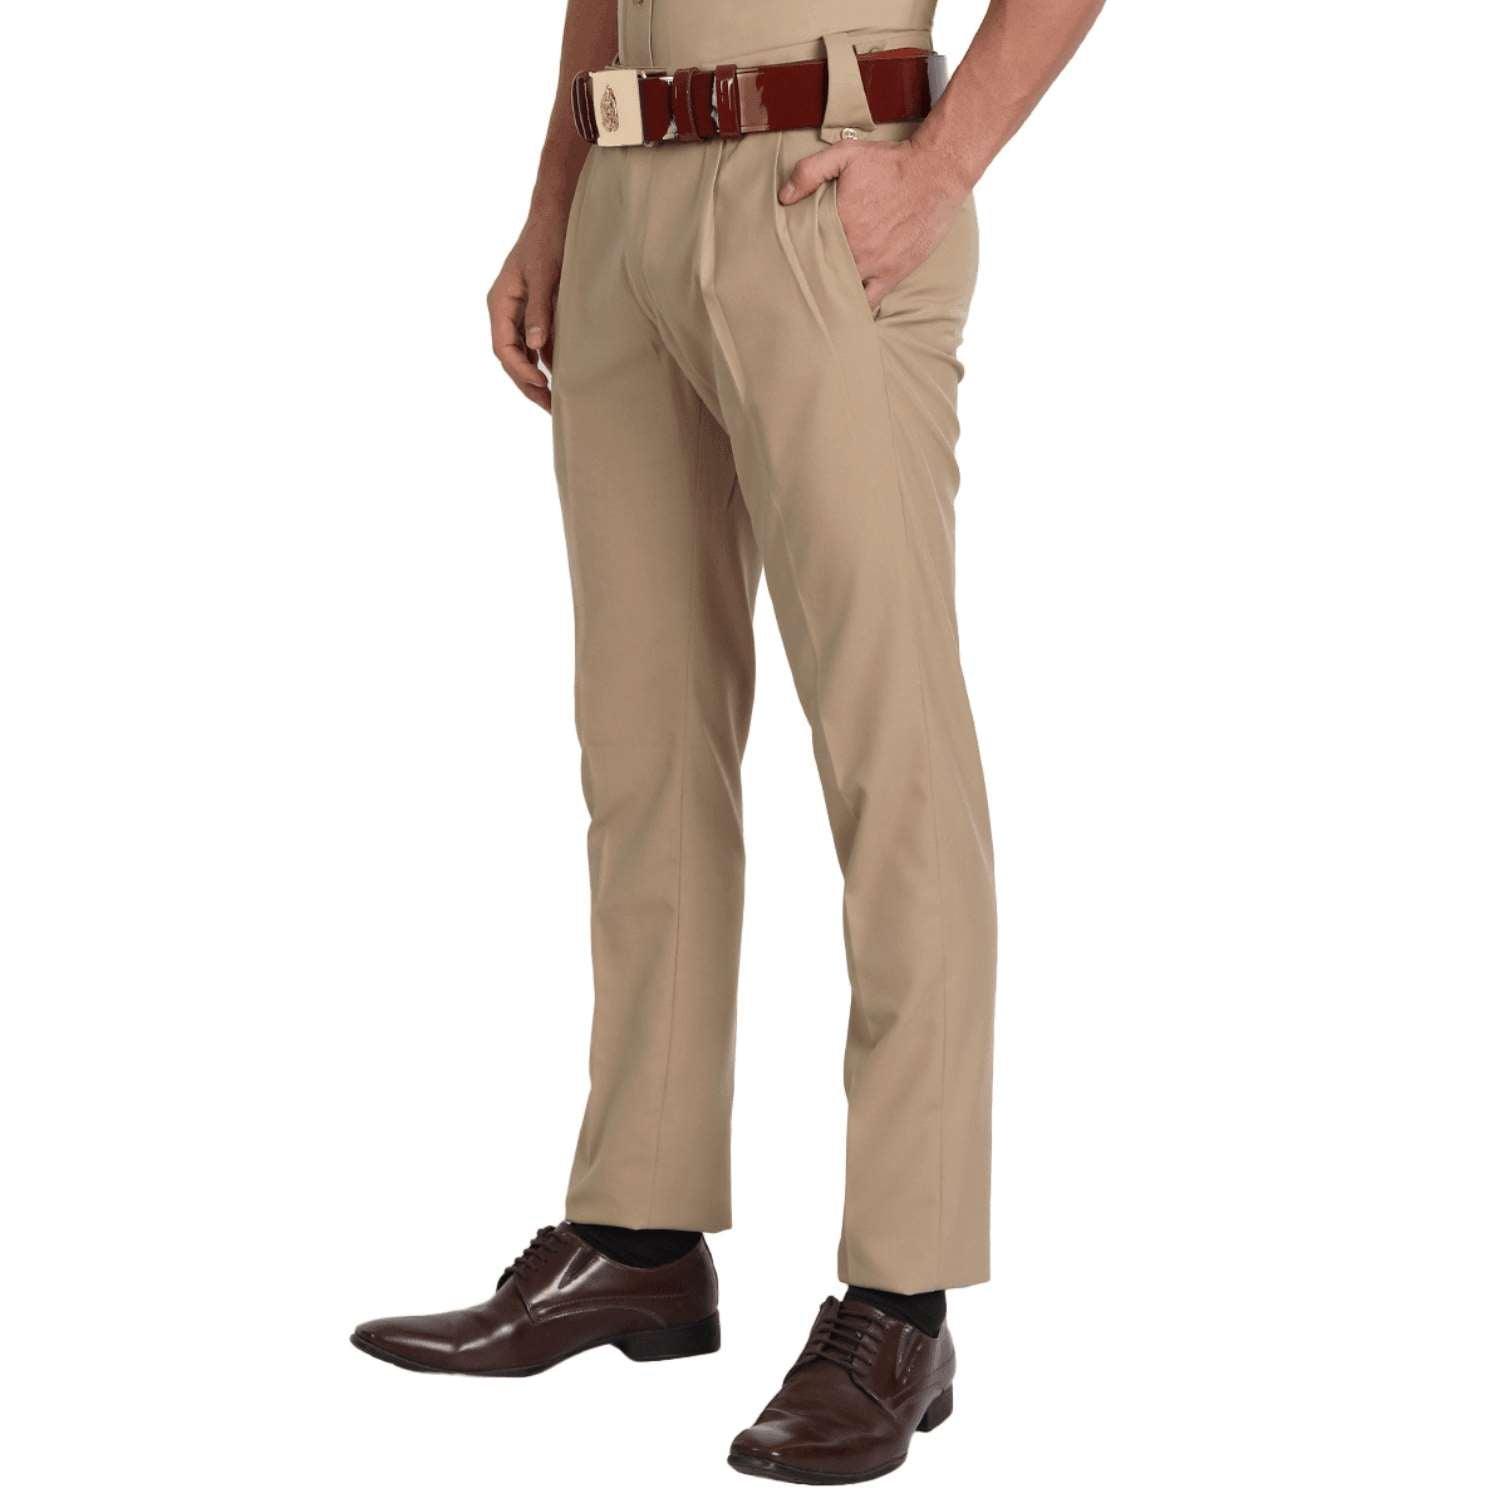 NWT Vtg Southeastern Men's Size 38 Navy W/Yellow Stripe Uniform Pants USA |  eBay